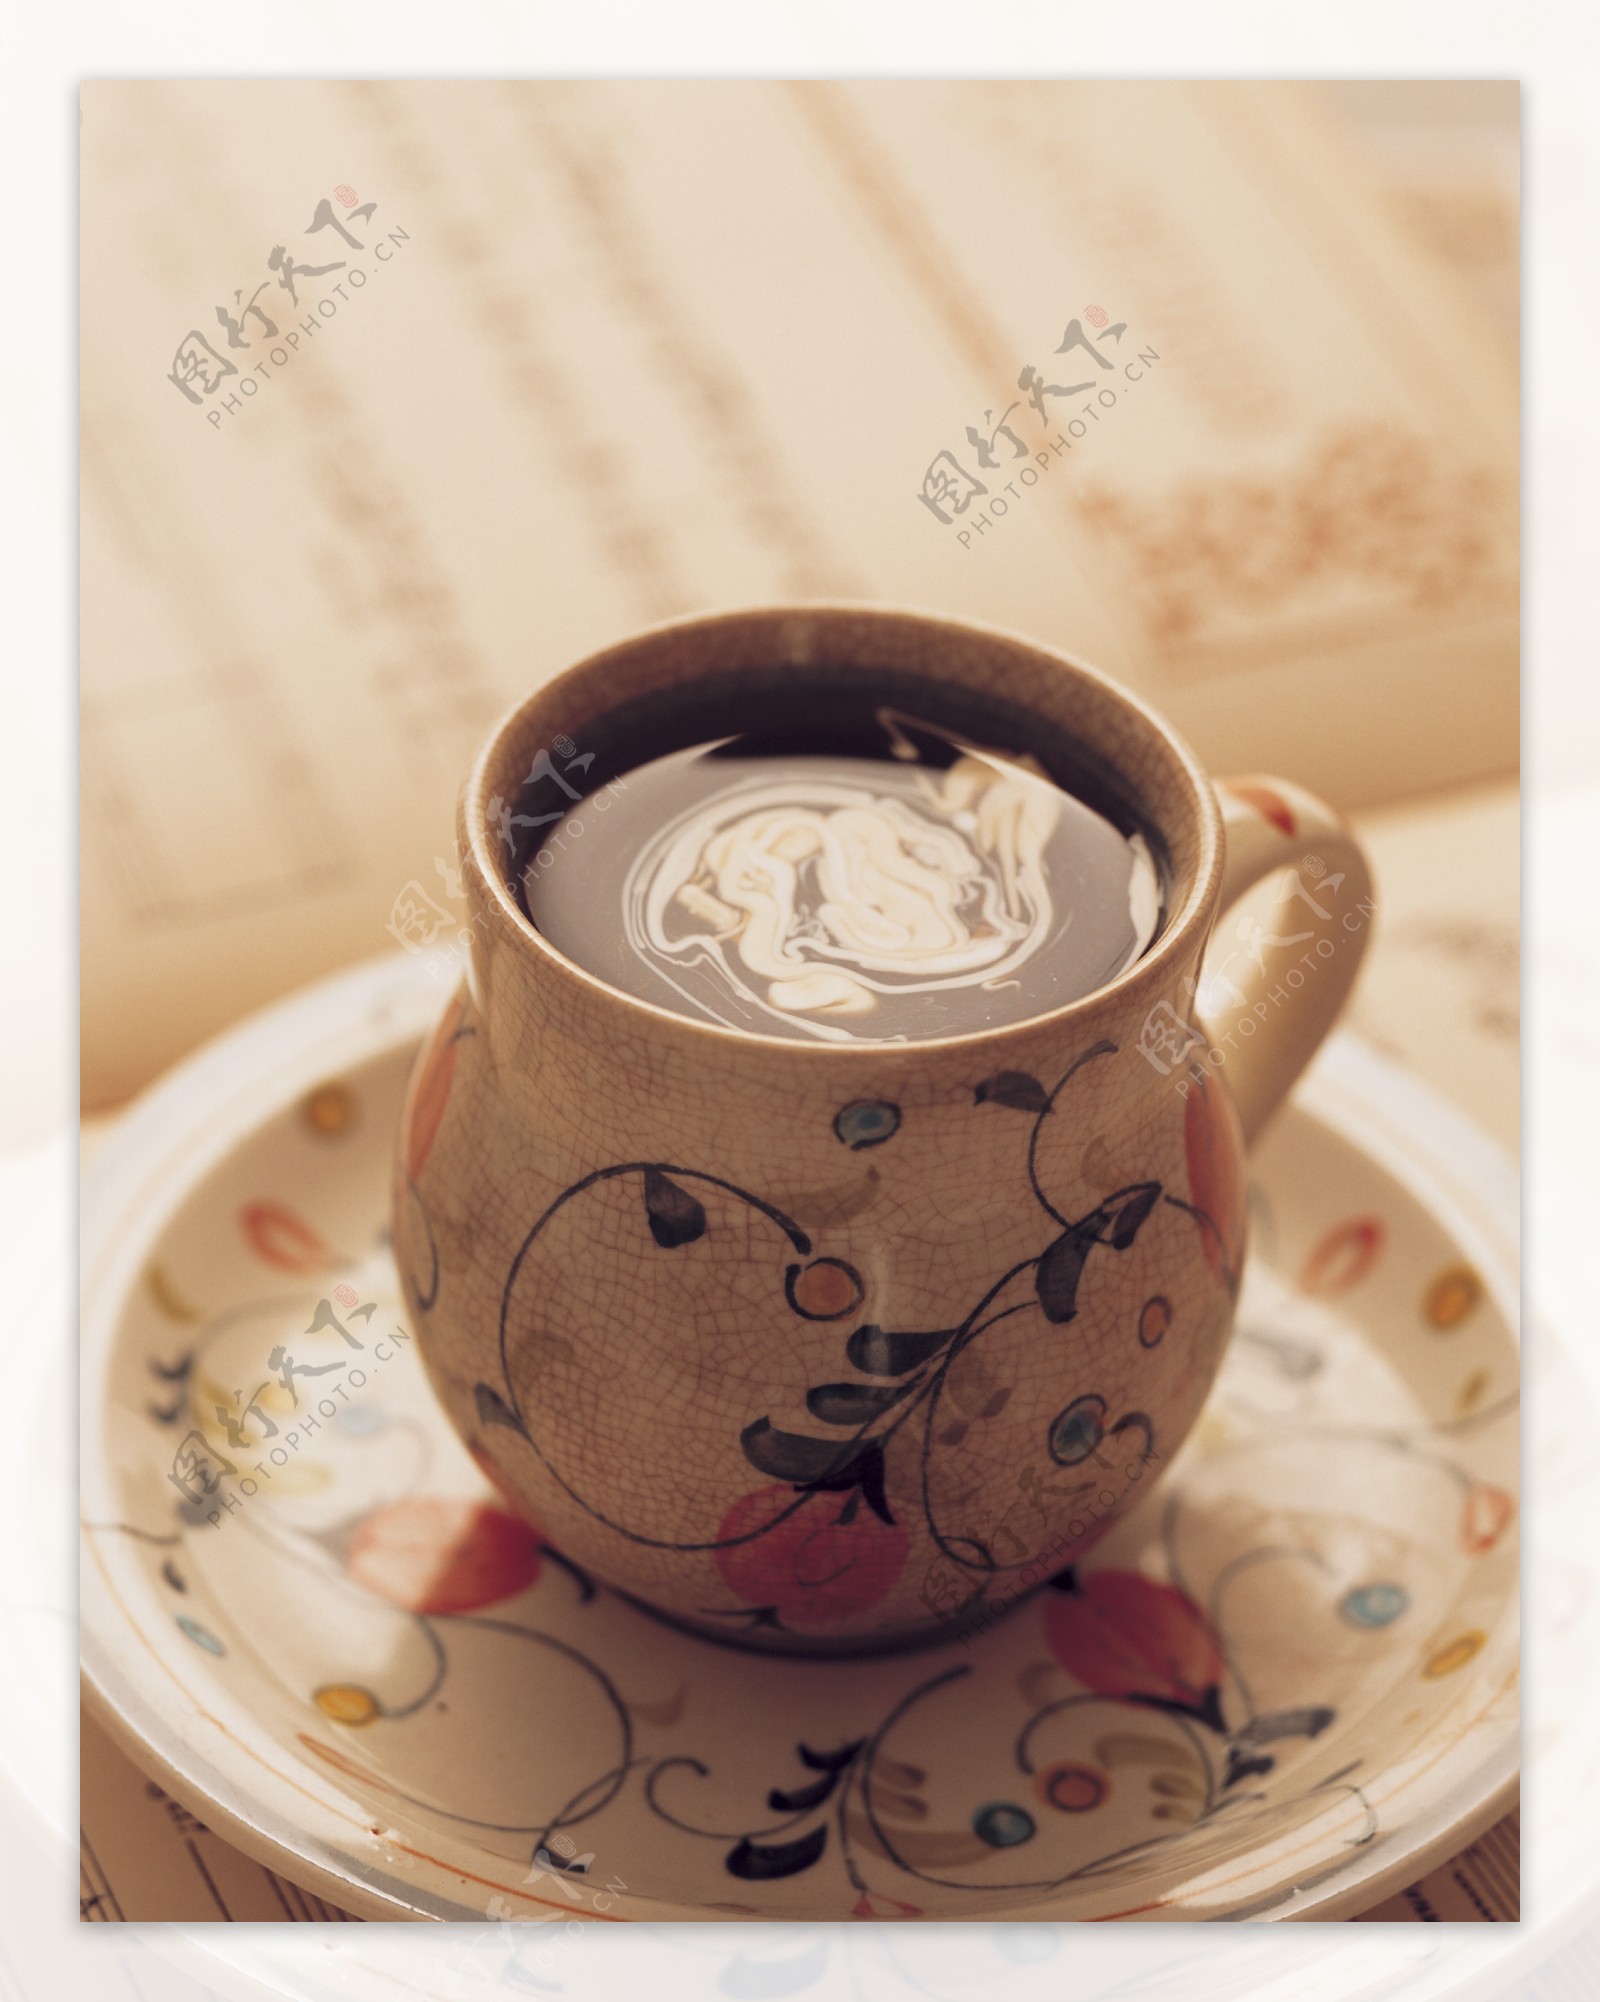 一杯咖啡古典花纹茶具图片